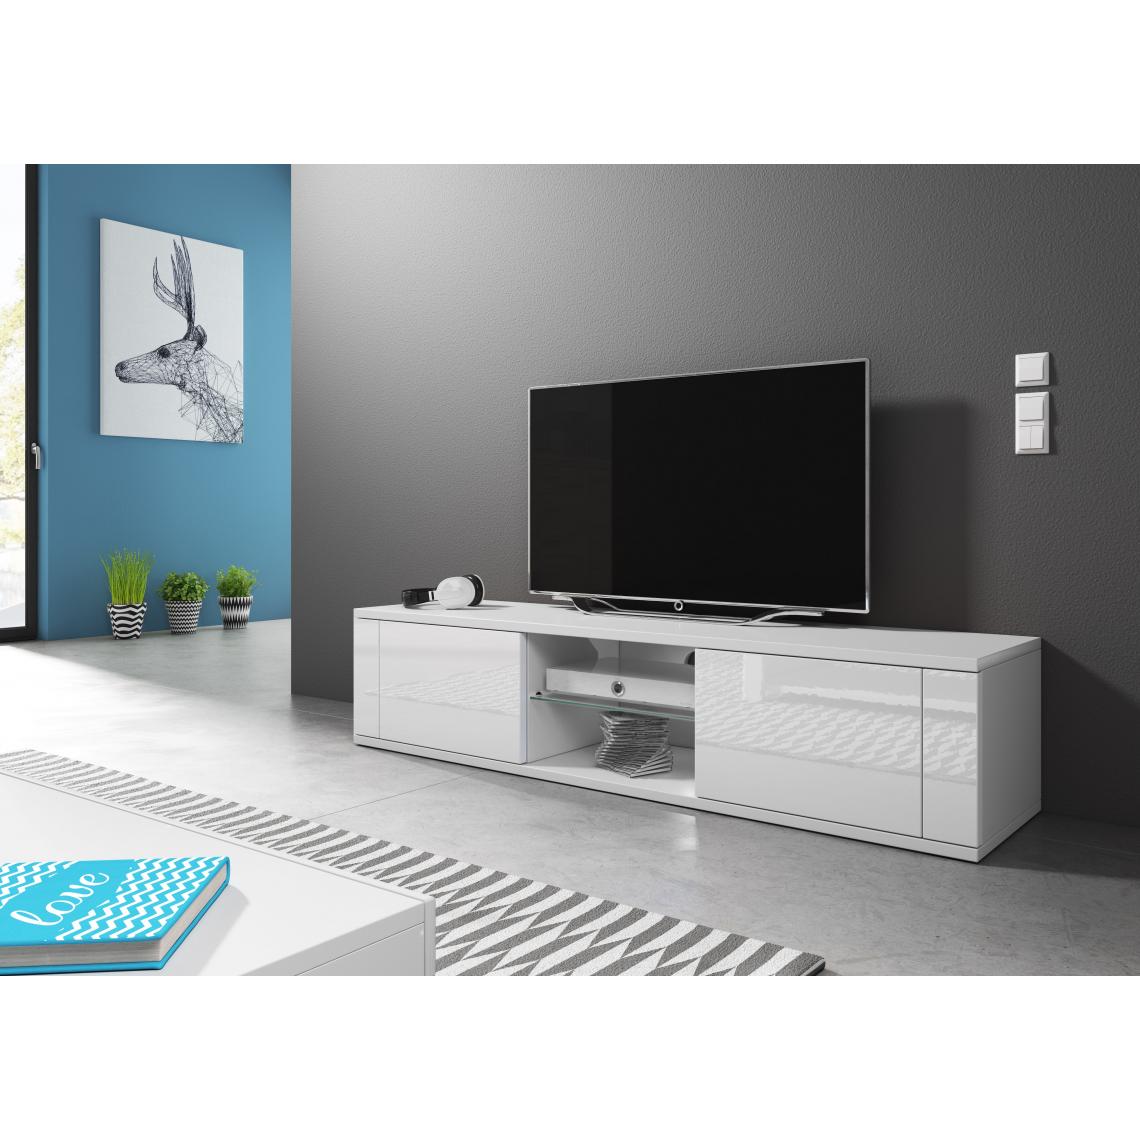 Vivaldi - VIVALDI Meuble TV - HIT - 140 cm - blanc mat / blanc brillant - style design - Meubles TV, Hi-Fi